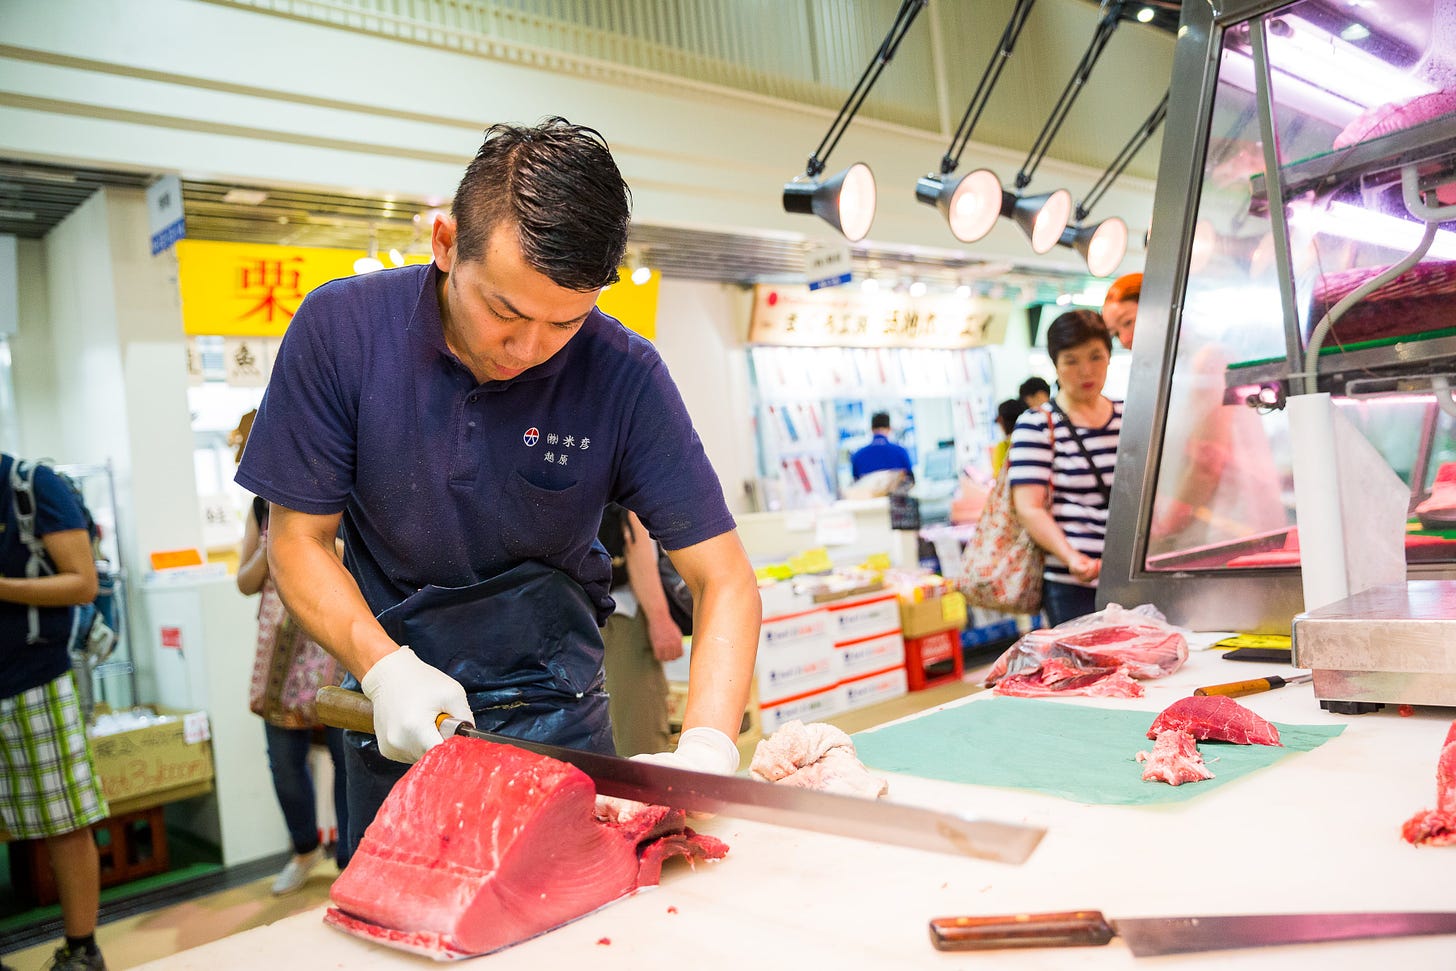 Tuna cutting at Tsukiji